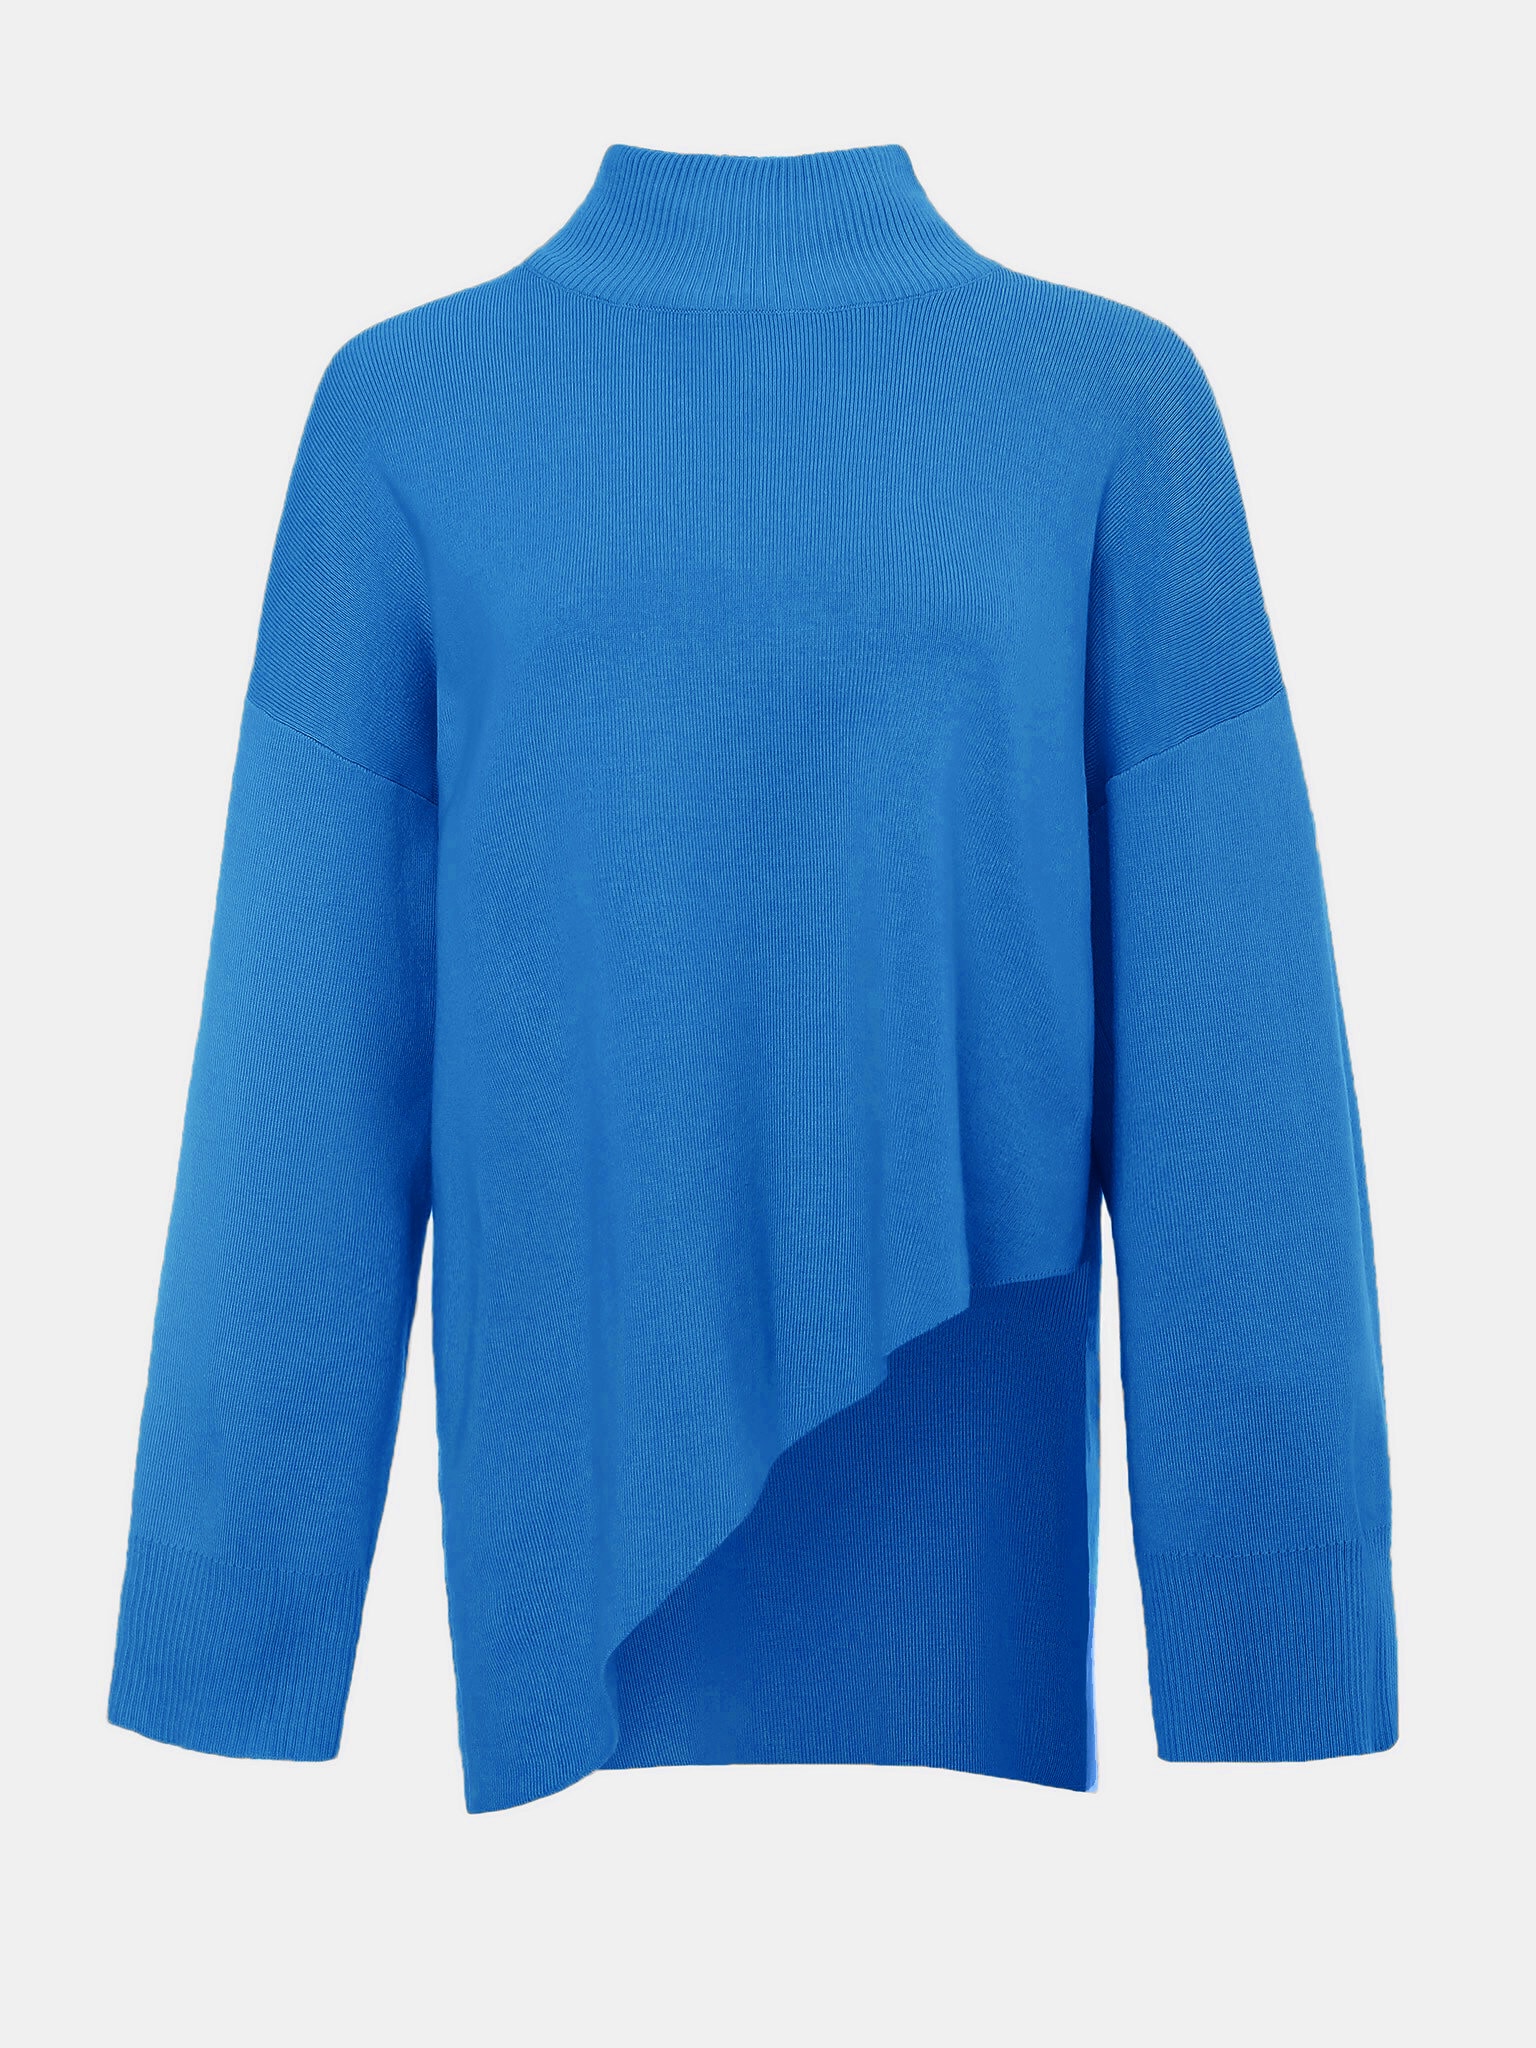 Asymmetrical knit sweater/women pullover sweater dress/cowl neck sweat –  lijingshop